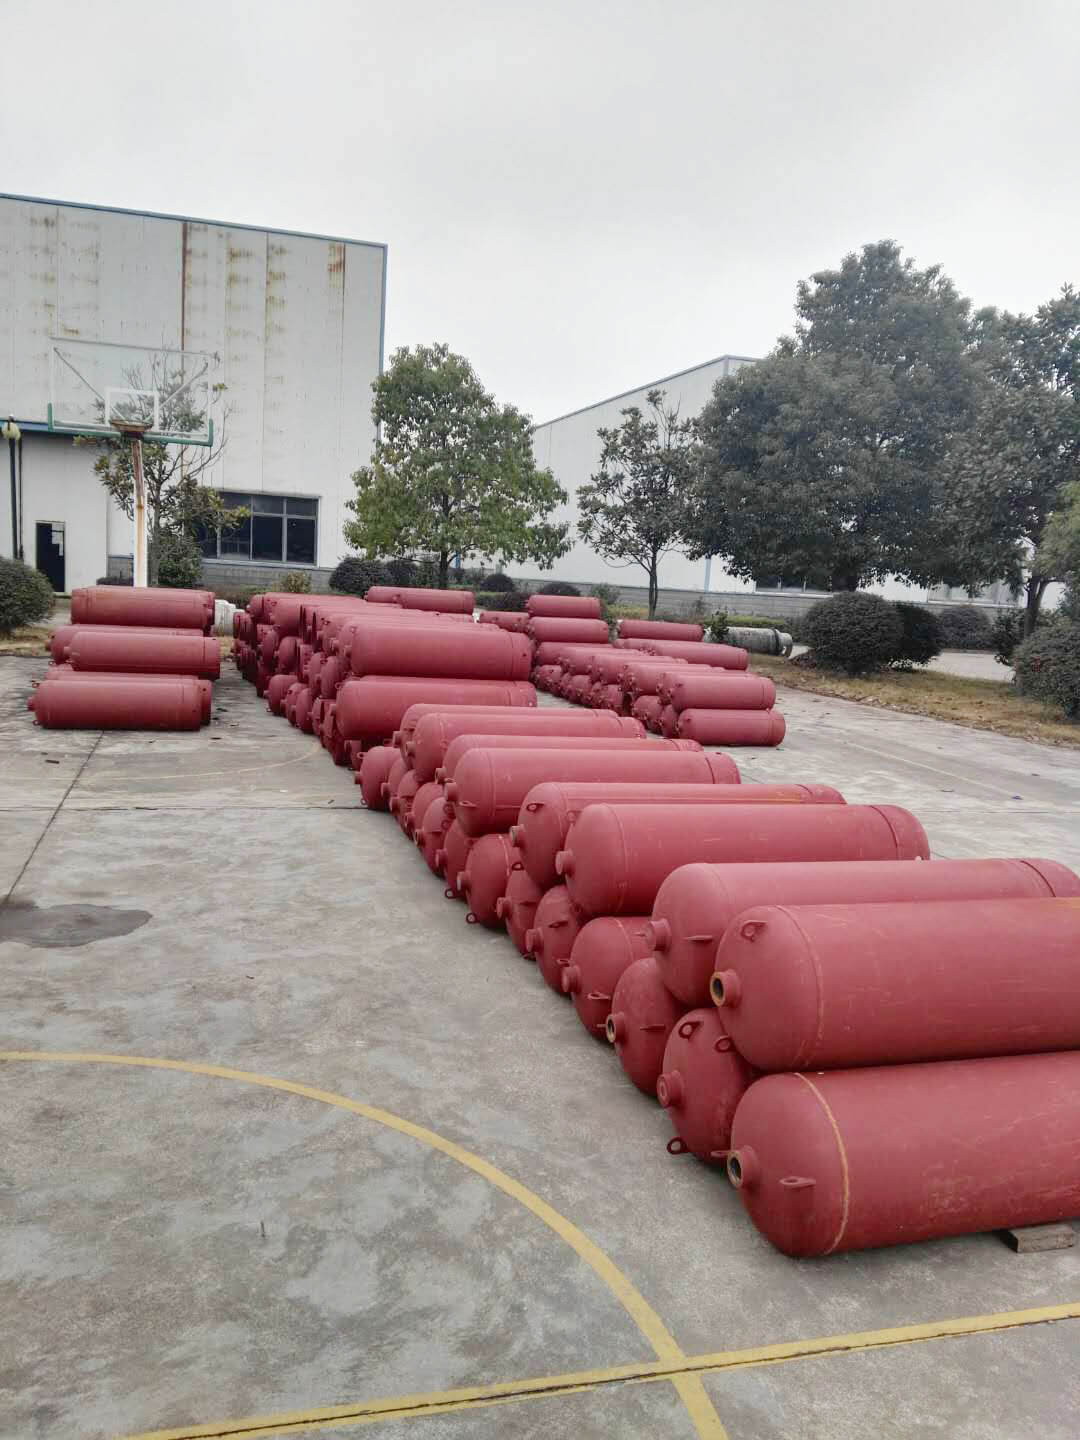 湖南省金鼎消防器材有限公司迎战销售高峰积极备货与生产